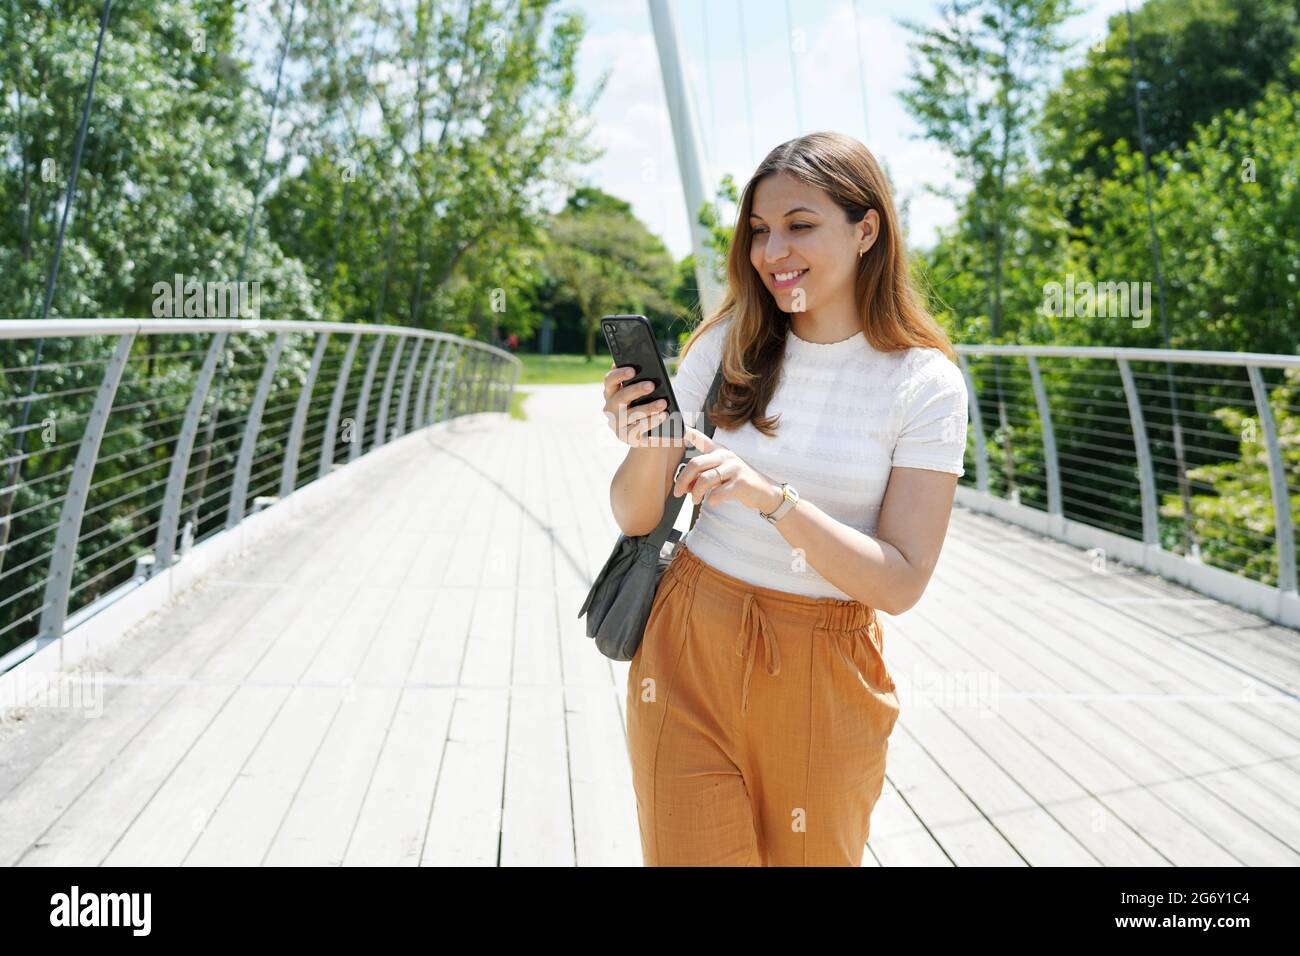 Glückliche junge Frau mit bequemen Kleidern, die mit dem Finger auf dem Smartphone im Stadtpark tippen. Nachhaltige umweltfreundliche Stadt- und Lifestyle-Technologie Konz Stockfoto